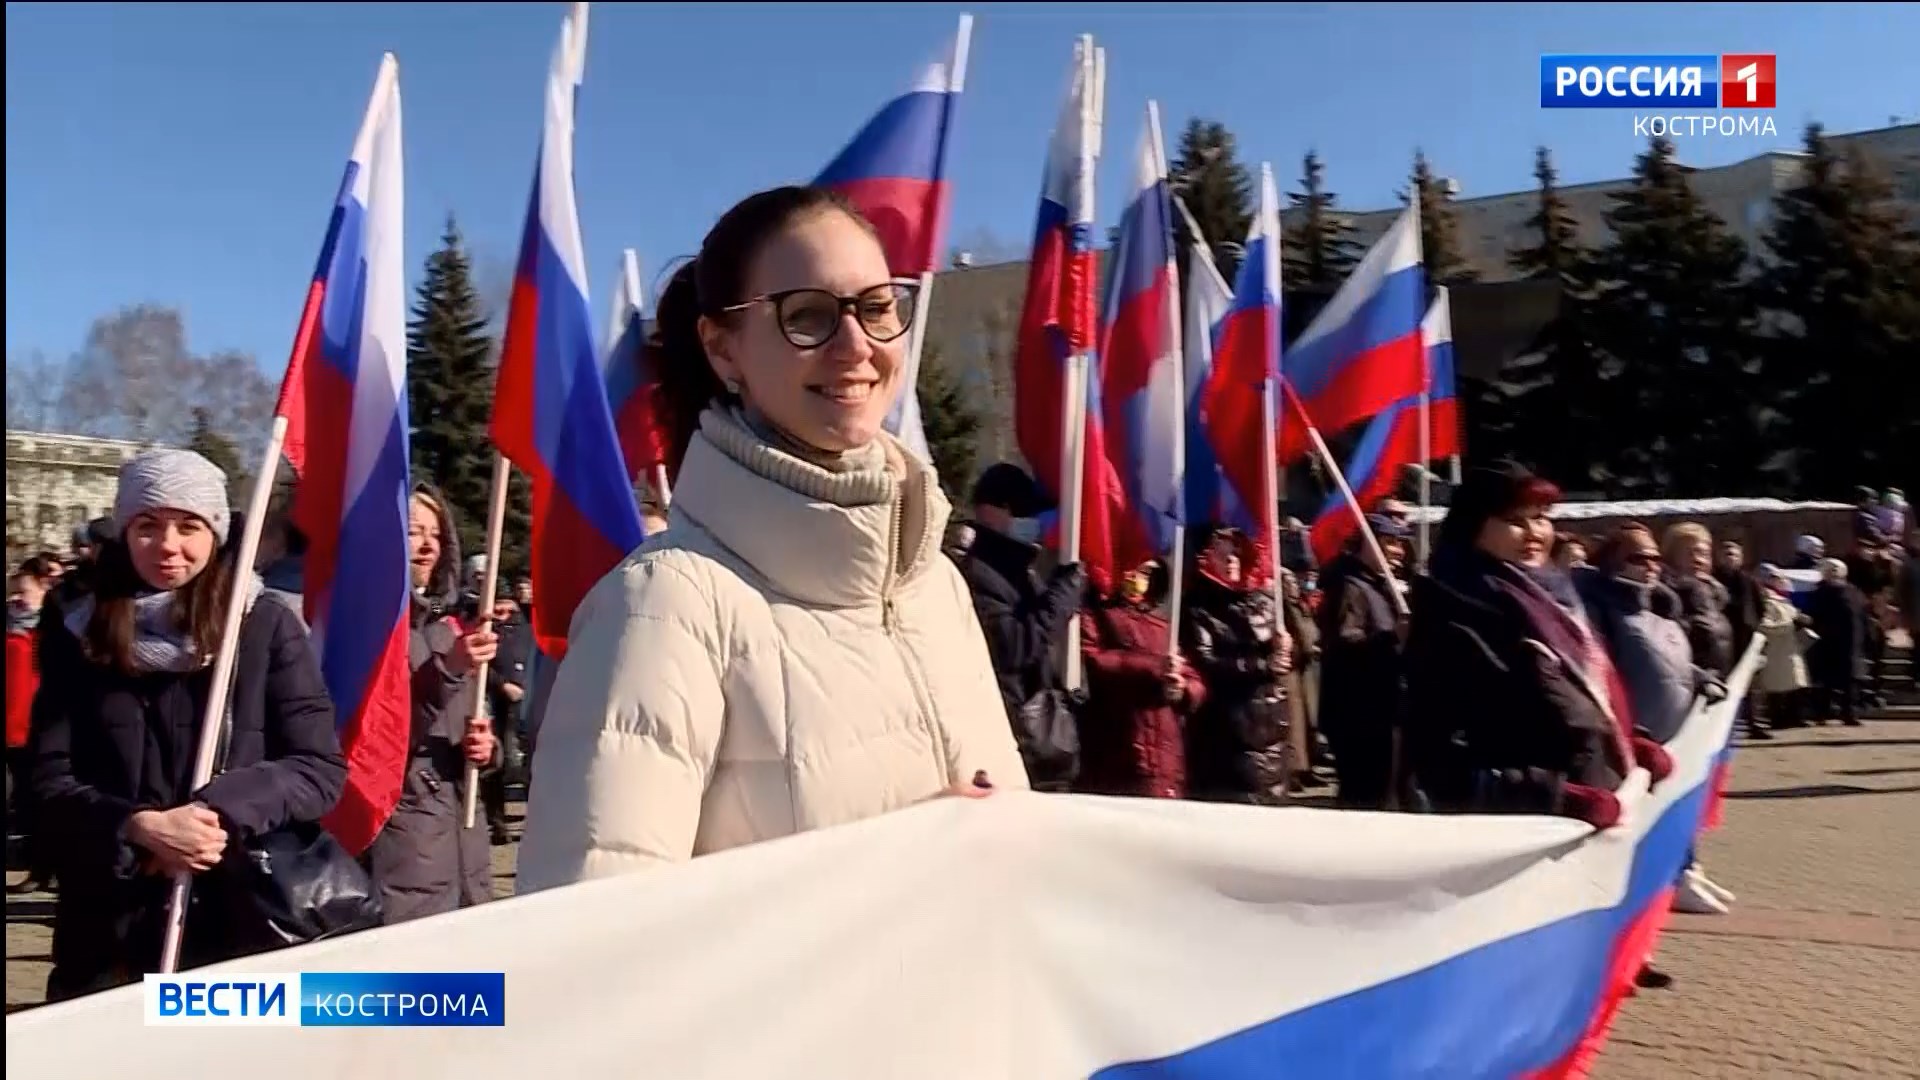 Кострома отметила годовщину Крымской весны